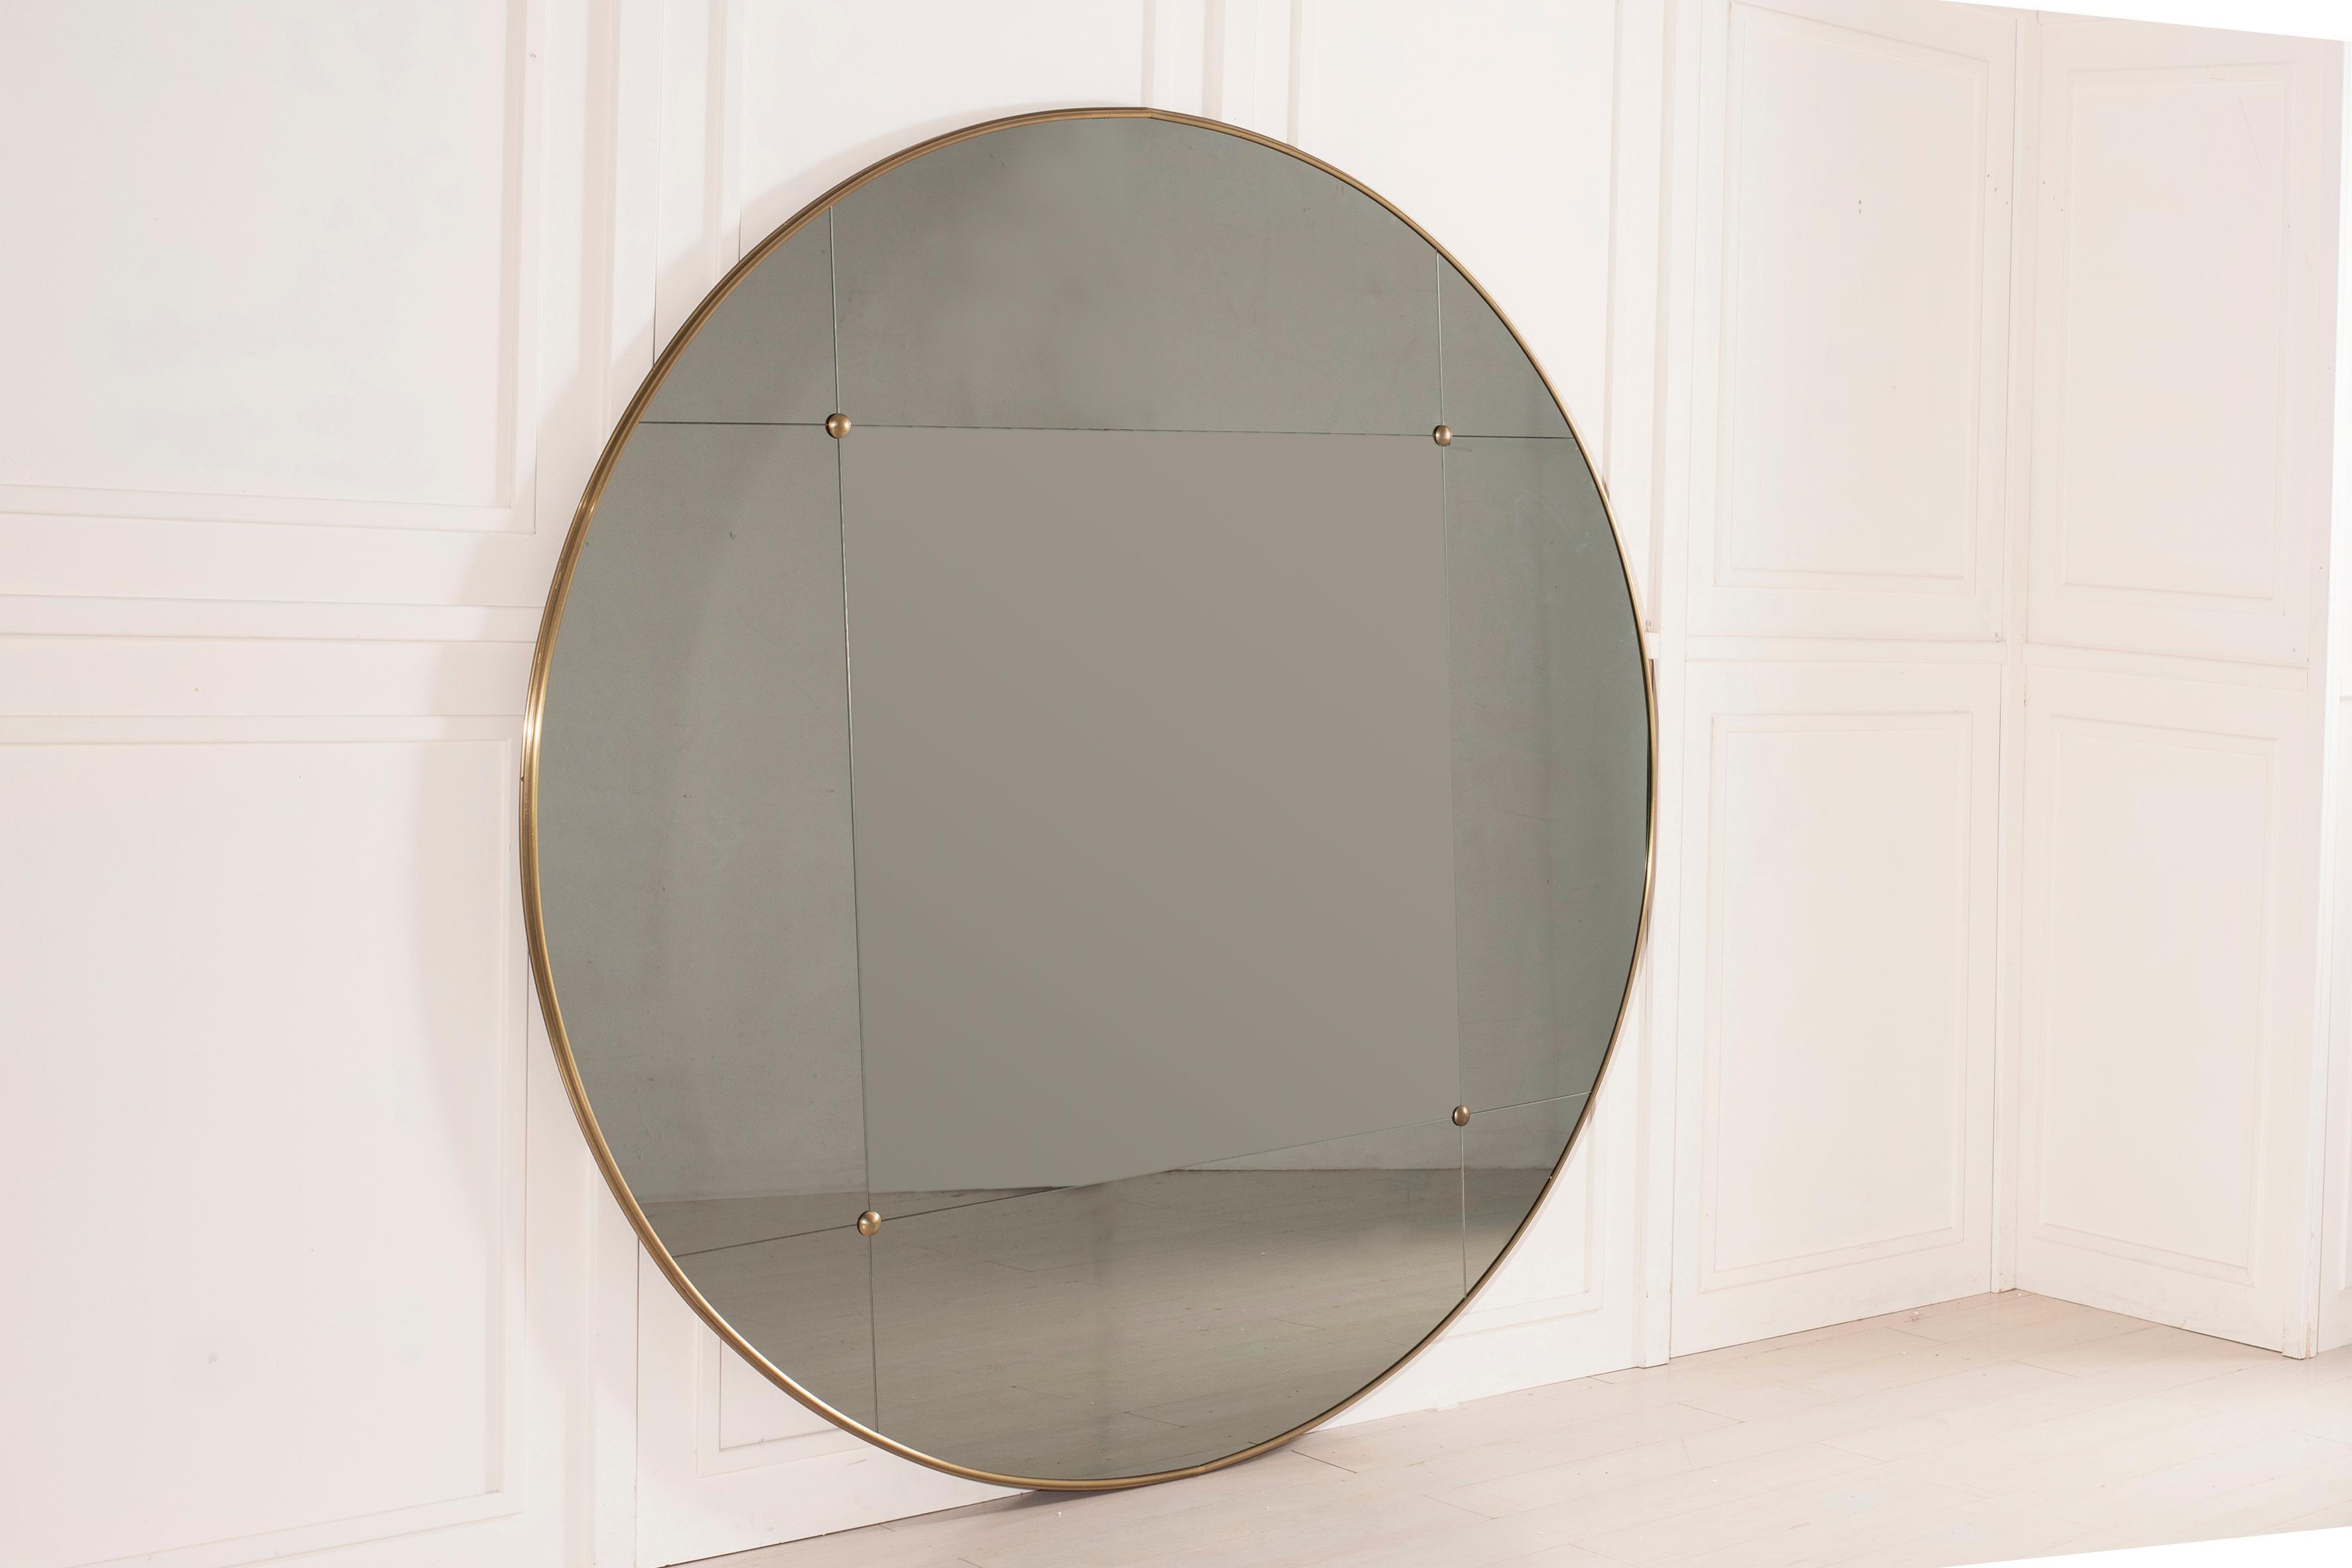 Pescetta présente sa collection de miroirs contemporains personnalisables. Avec leur cadre en laiton, leur aspect vitré et leurs clous en laiton, ces miroirs reproduisent l'idée des miroirs de style Art déco du début du XXe siècle. Ils conviennent